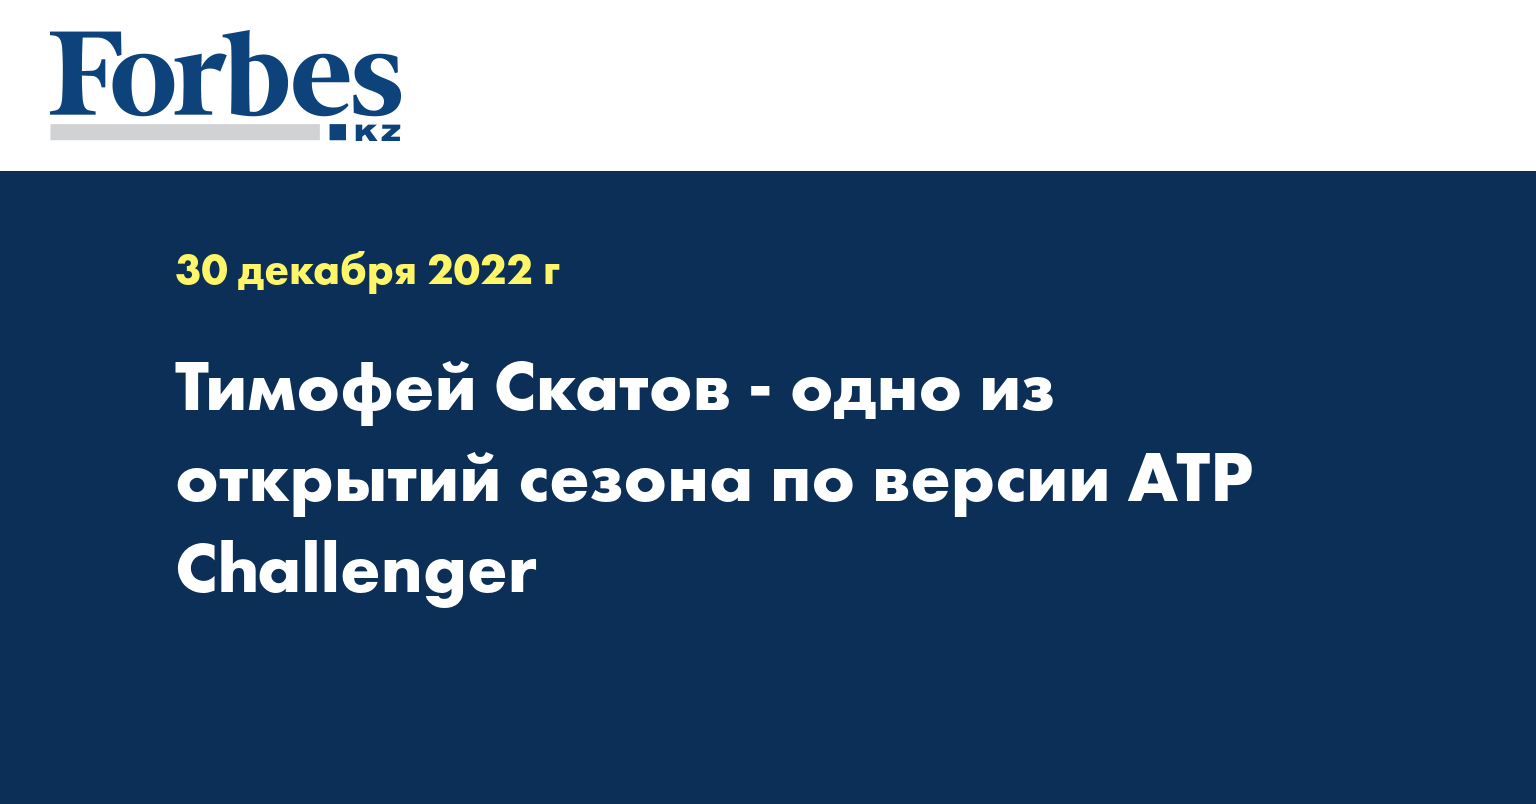 Тимофей Скатов - одно из открытий сезона по версии ATP Challenger